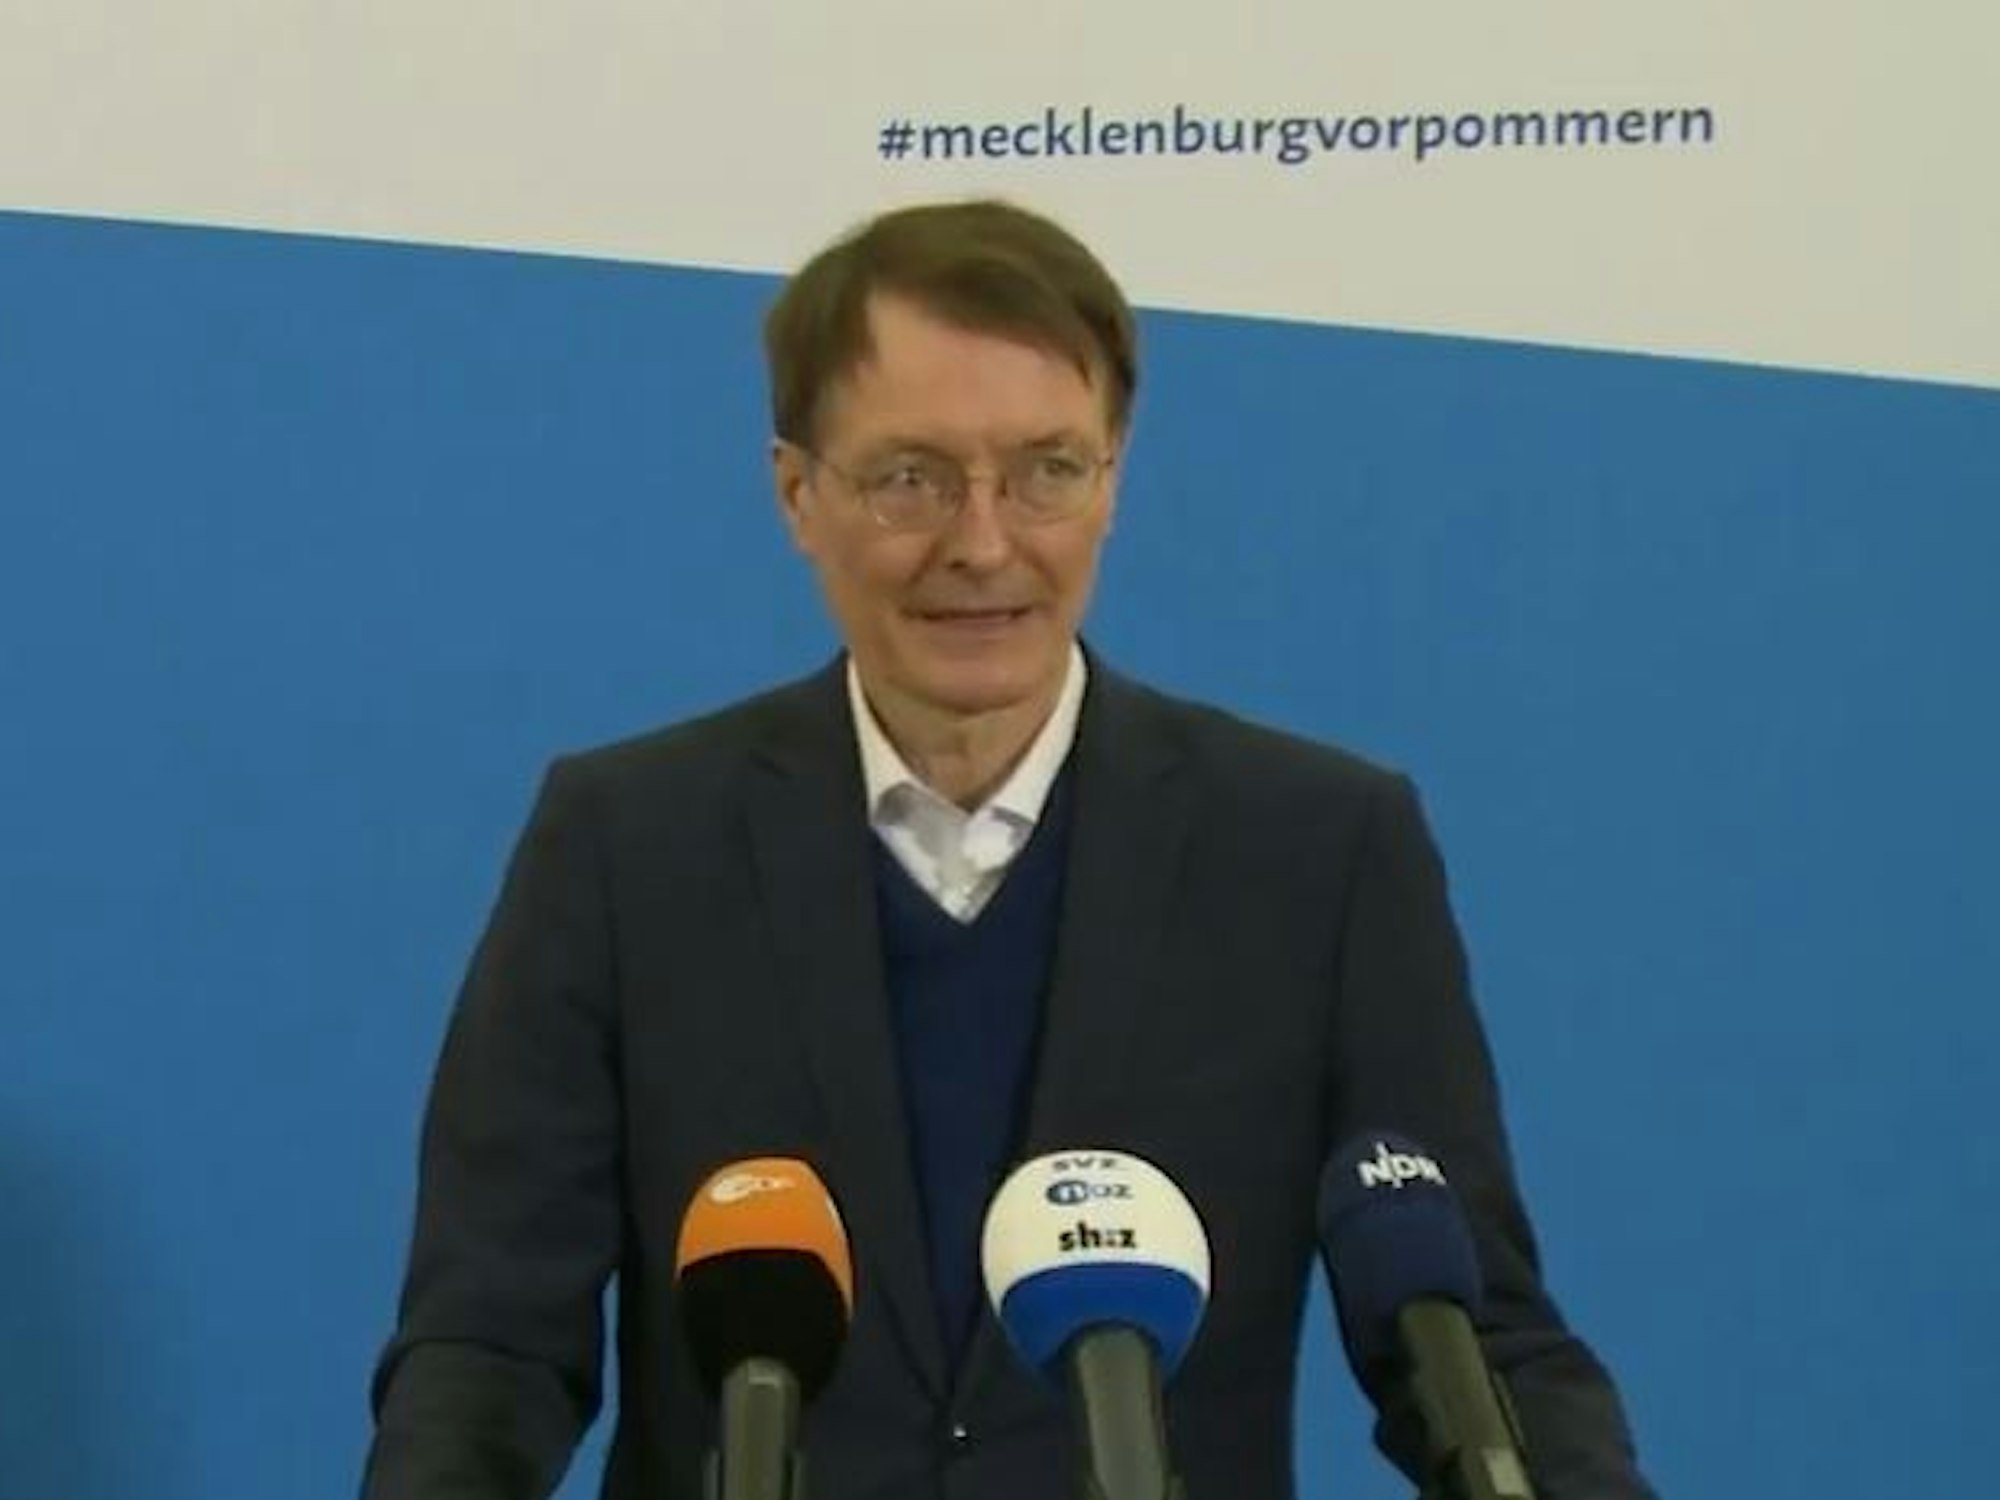 Karl Lauterbach wandte sich bei der Pressekonferenz in Schwerin mit eindringlichen Worten an die Bevölkerung.